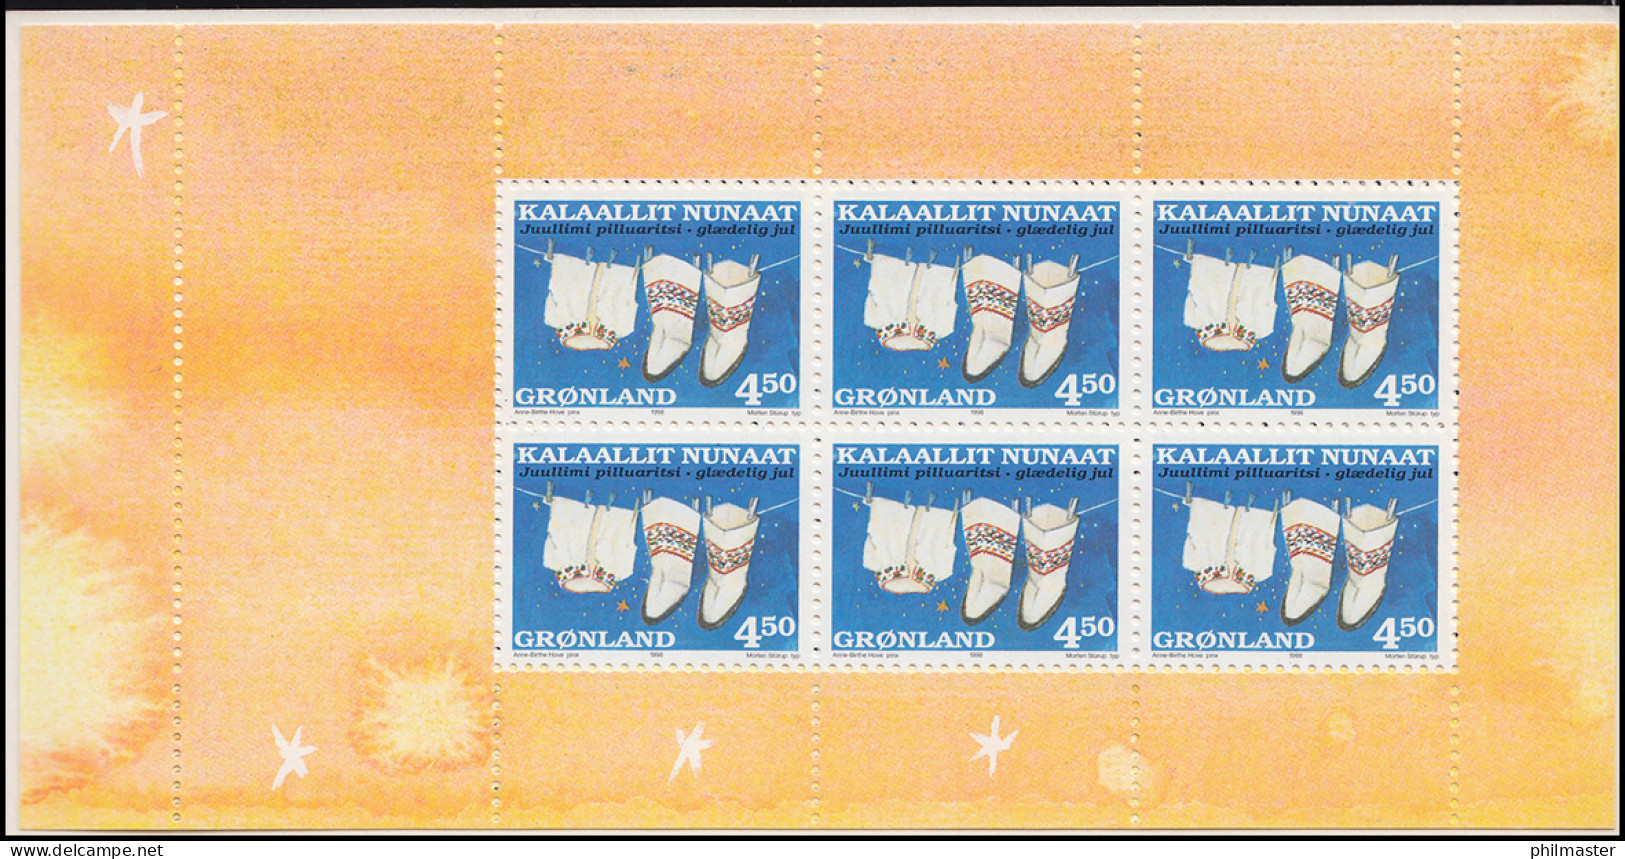 Grönland Markenheftchen 329-330 Weihnachten 1998, ** Postfrisch - Carnets